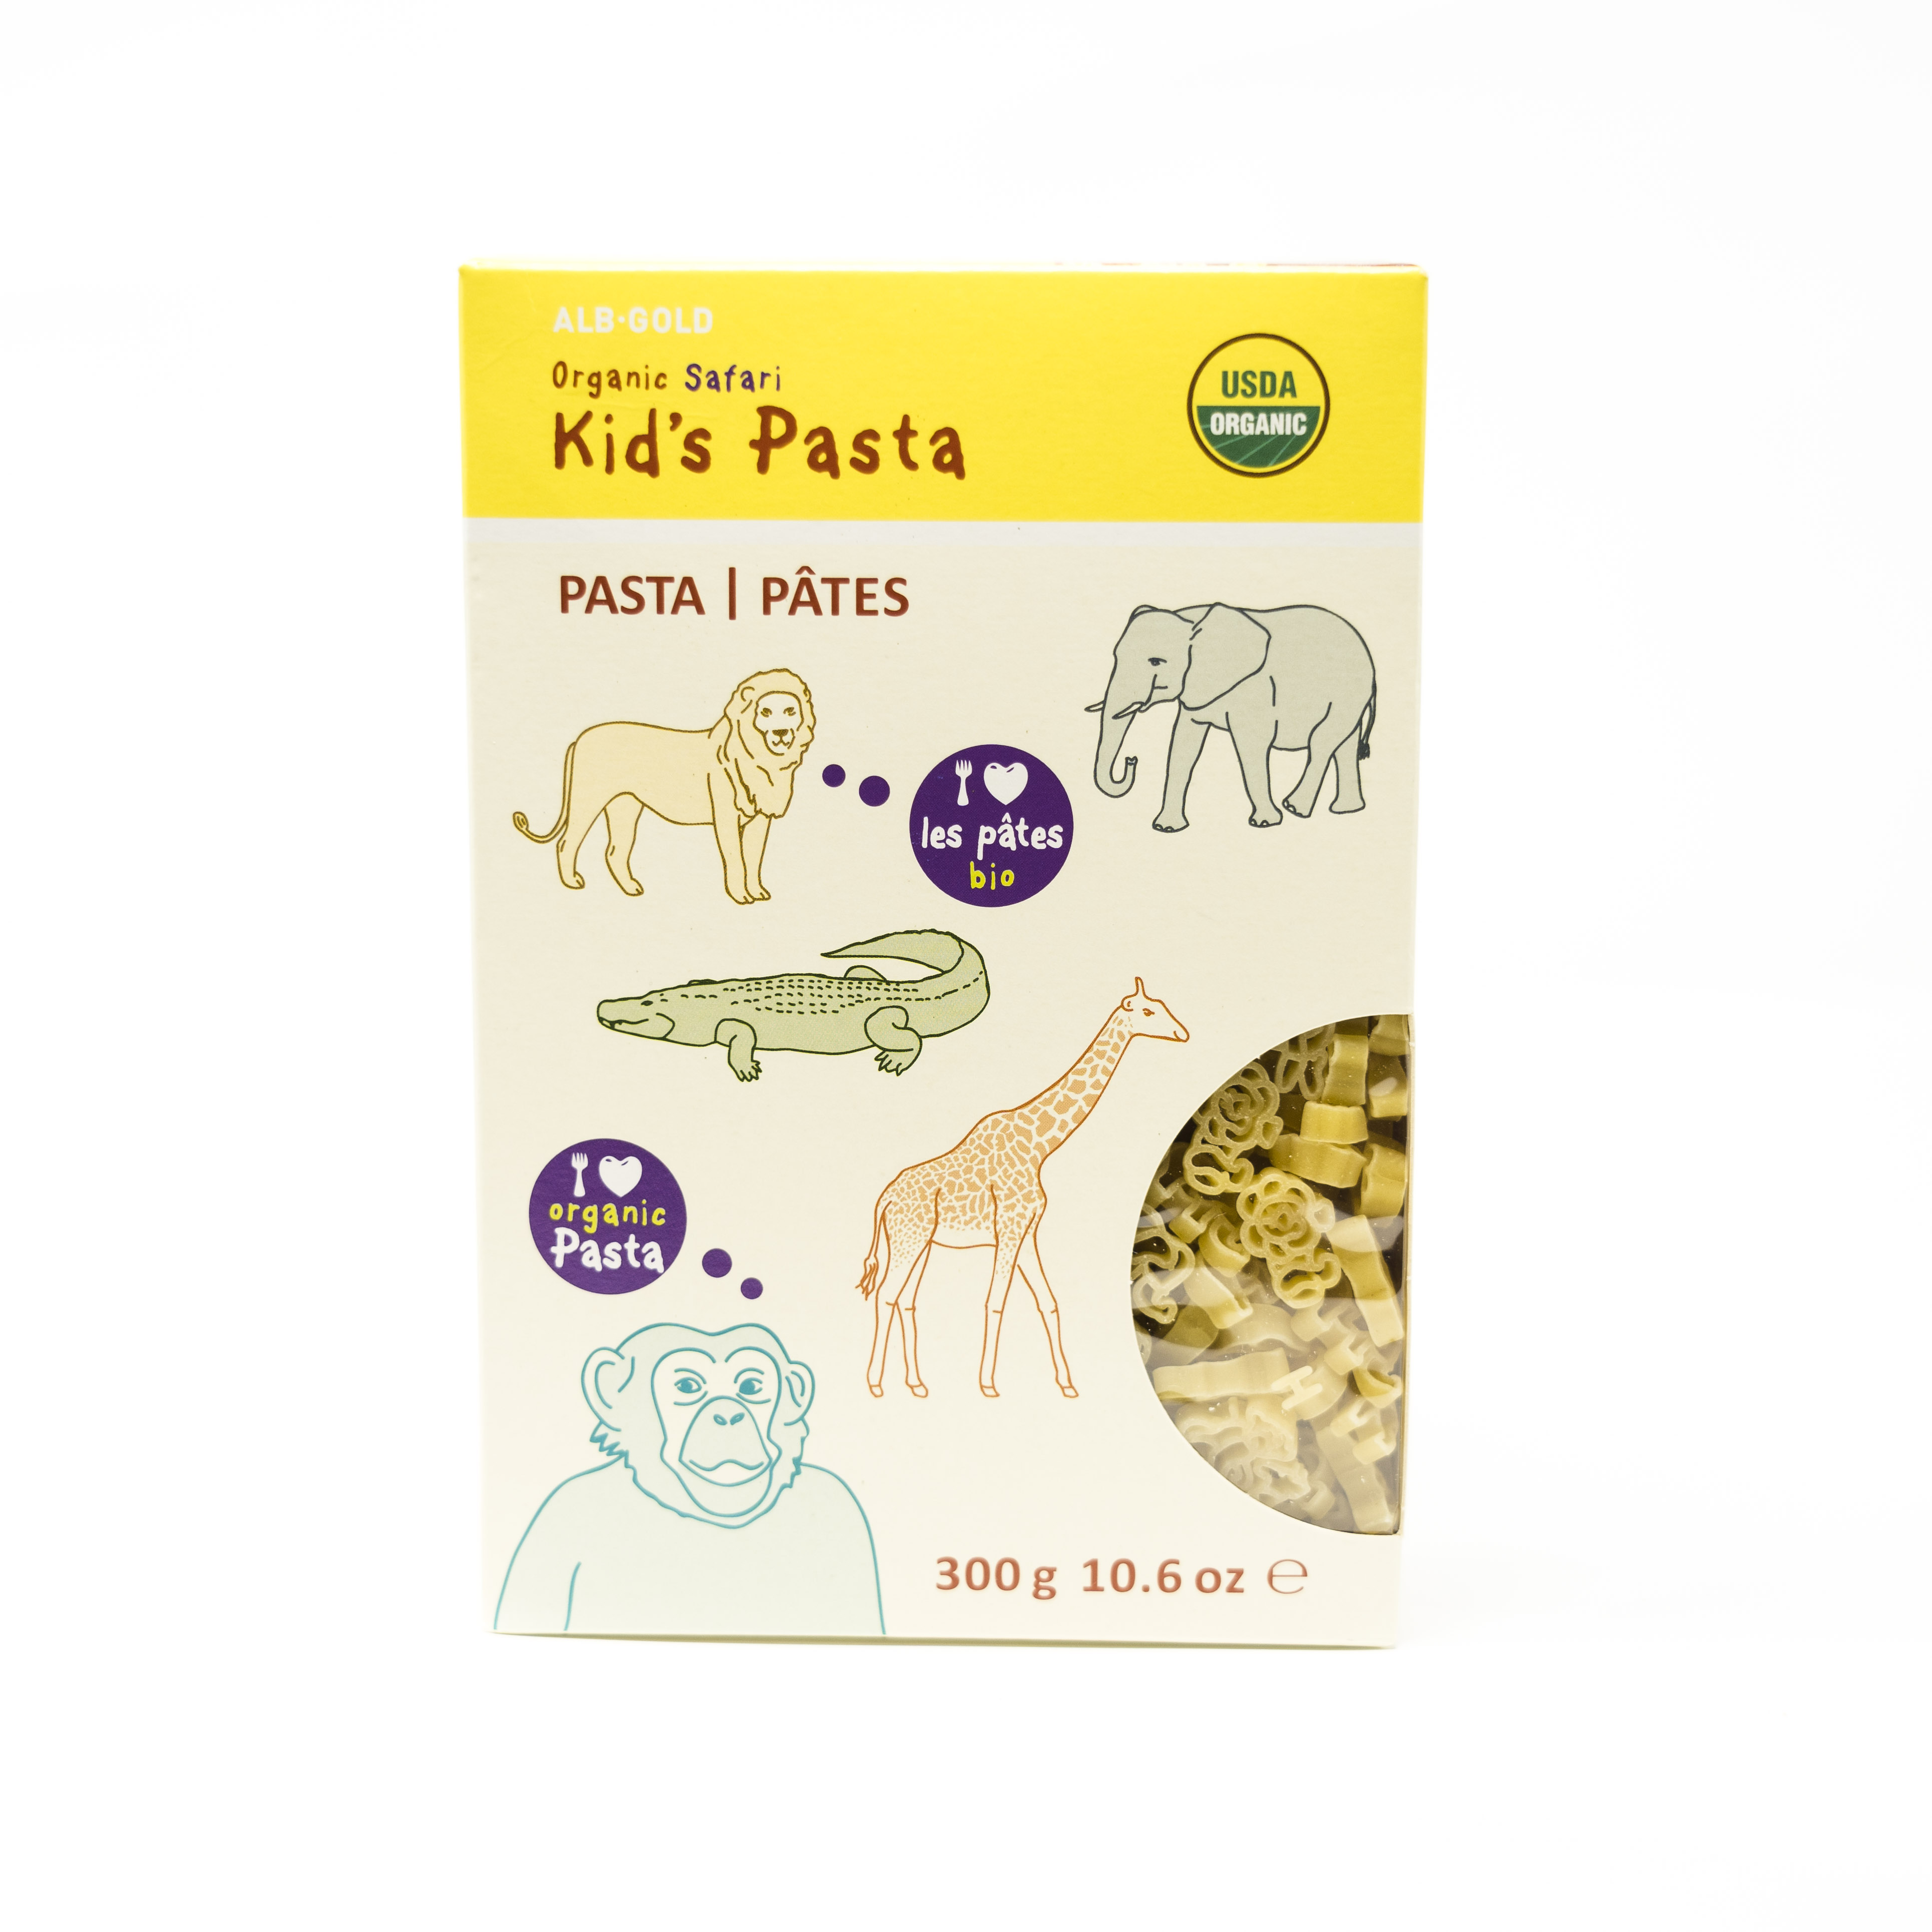 ALB Gold Organic Safari Kid's Pasta